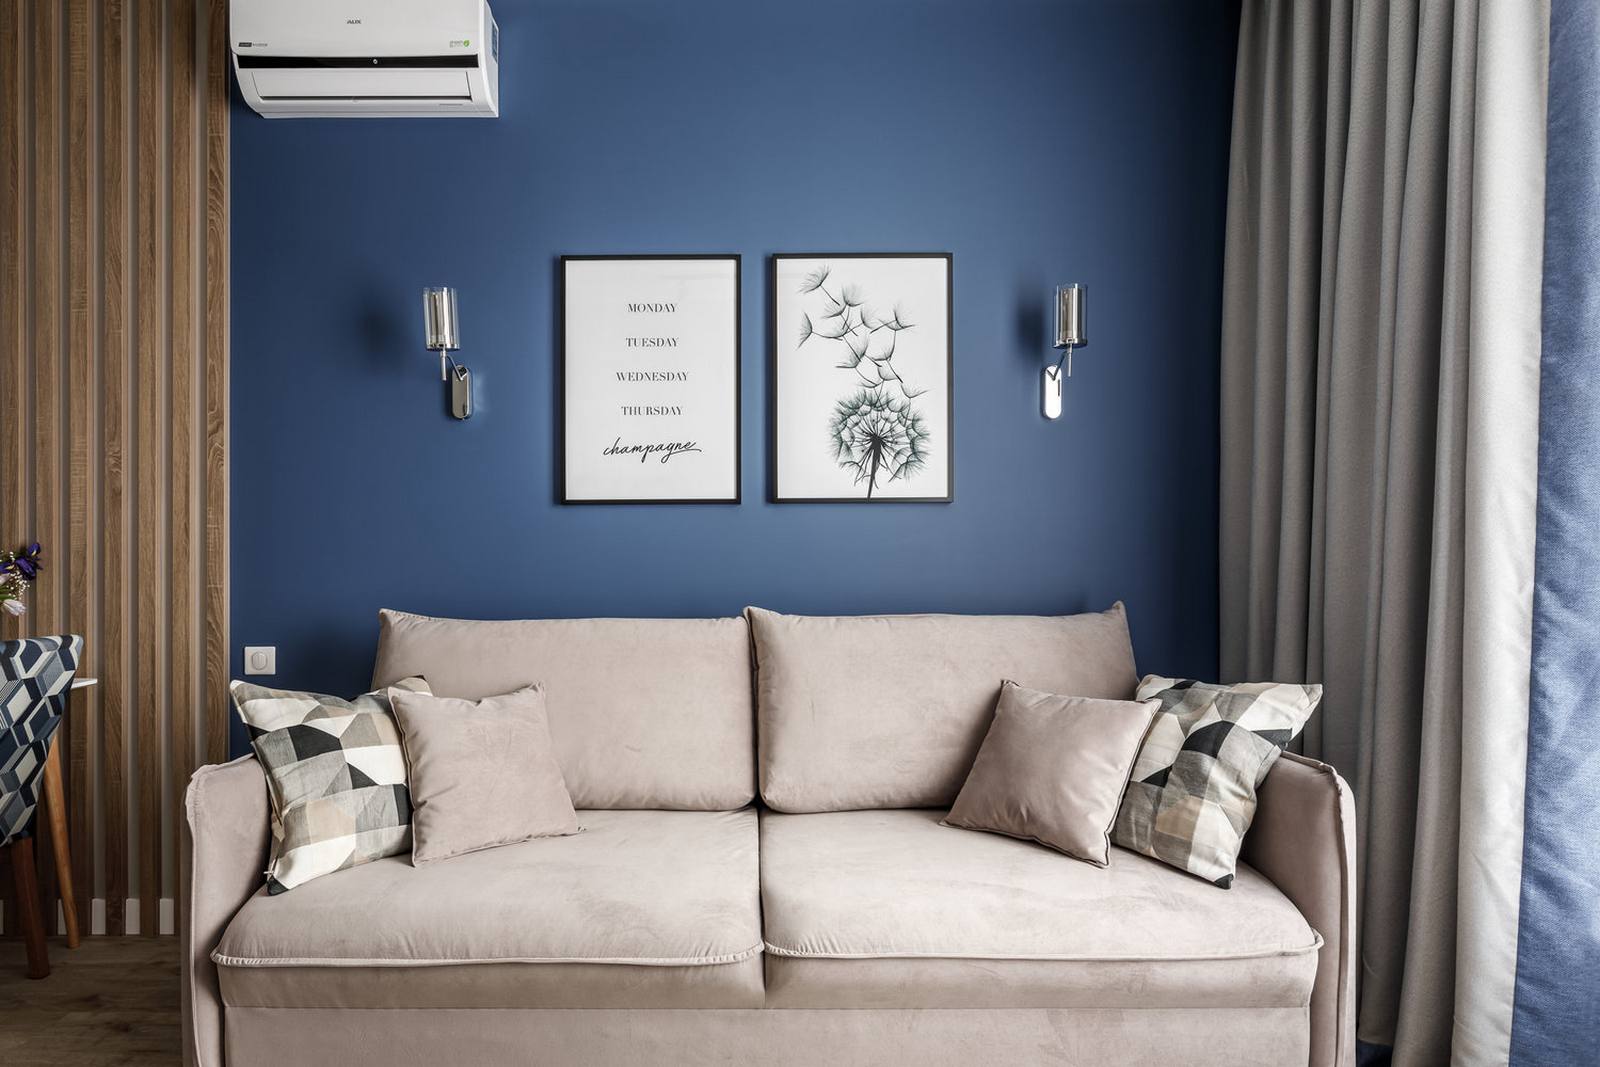 Phòng khách với duy nhất chiếc ghế sofa êm ái màu be đậm, phía sau bức tường sơn màu xanh lam đậm là 2 bức tranh nhẹ nhàng cùng đèn gắn tường cân đối, hài hòa. Việc loại bỏ hoàn toàn chiếc bàn nước tạo nên khoảng trống rộng rãi ở trung tâm.